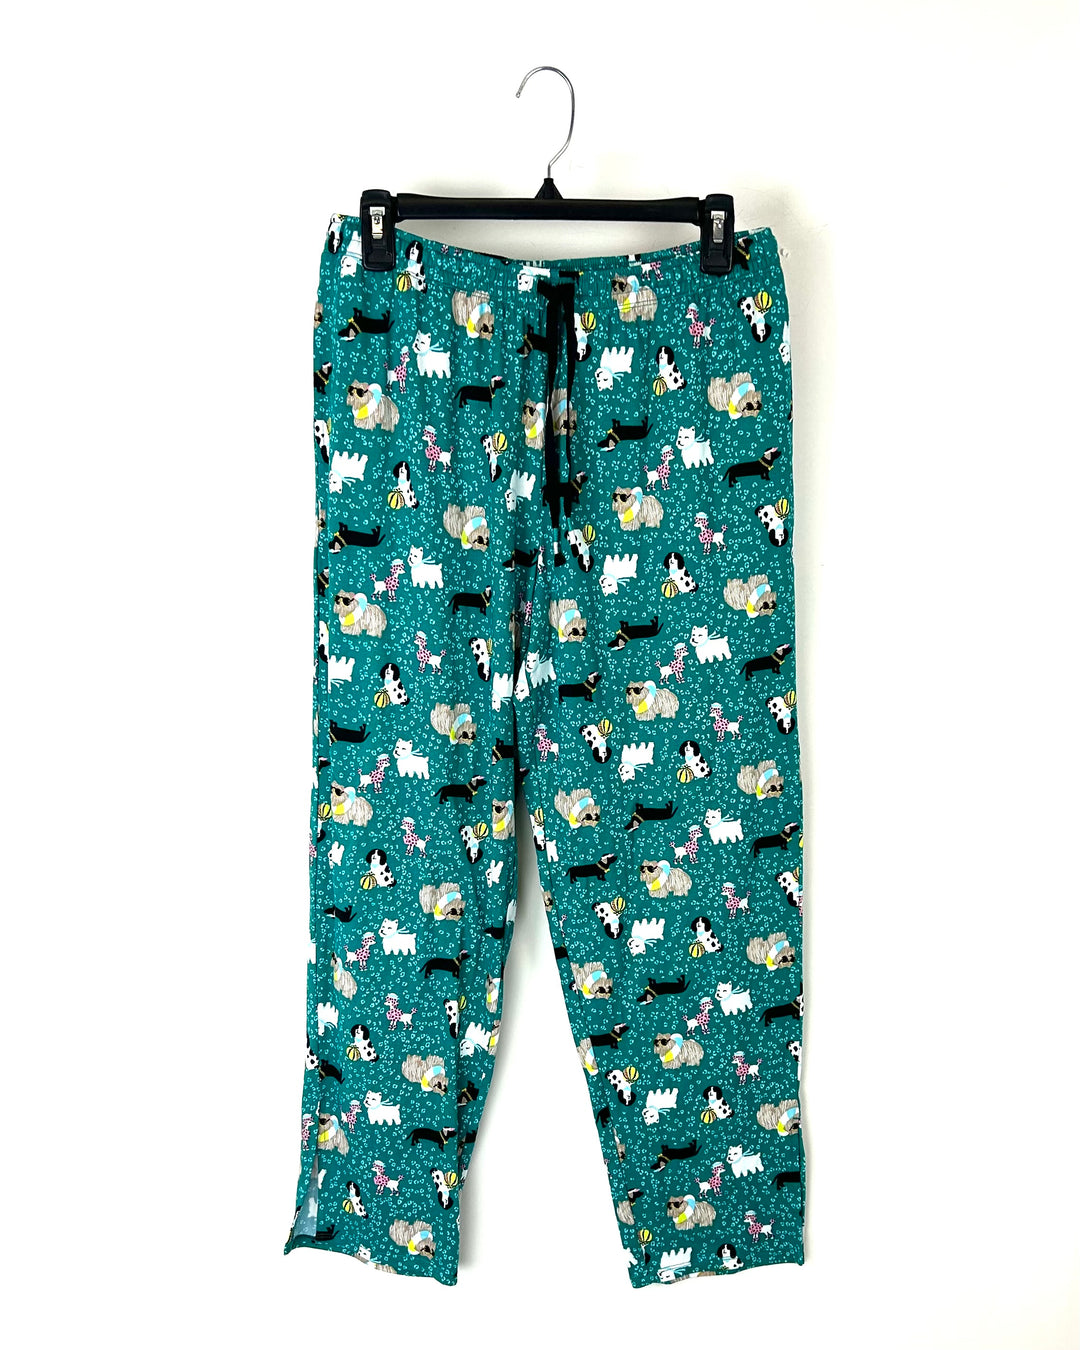 Green Dog Print Pajama Pants - Size 6-8